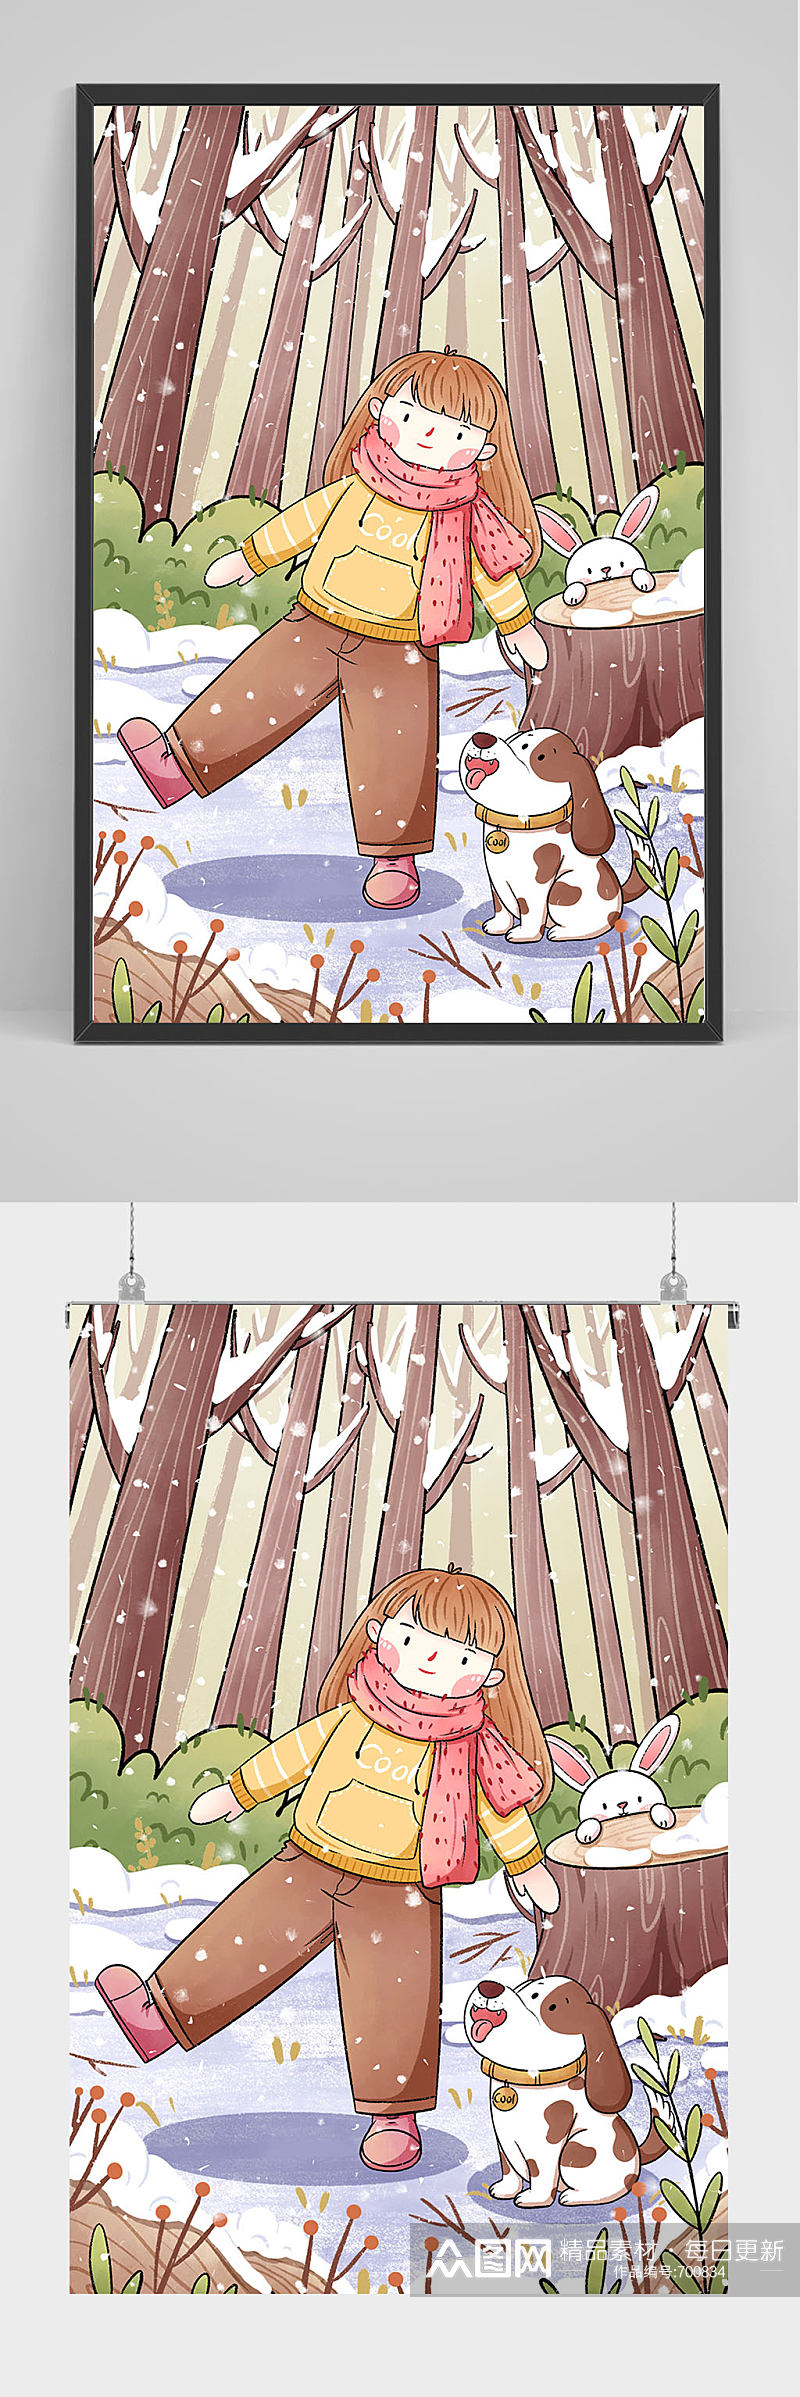 手绘在树林中的女孩和小动物插画设计素材